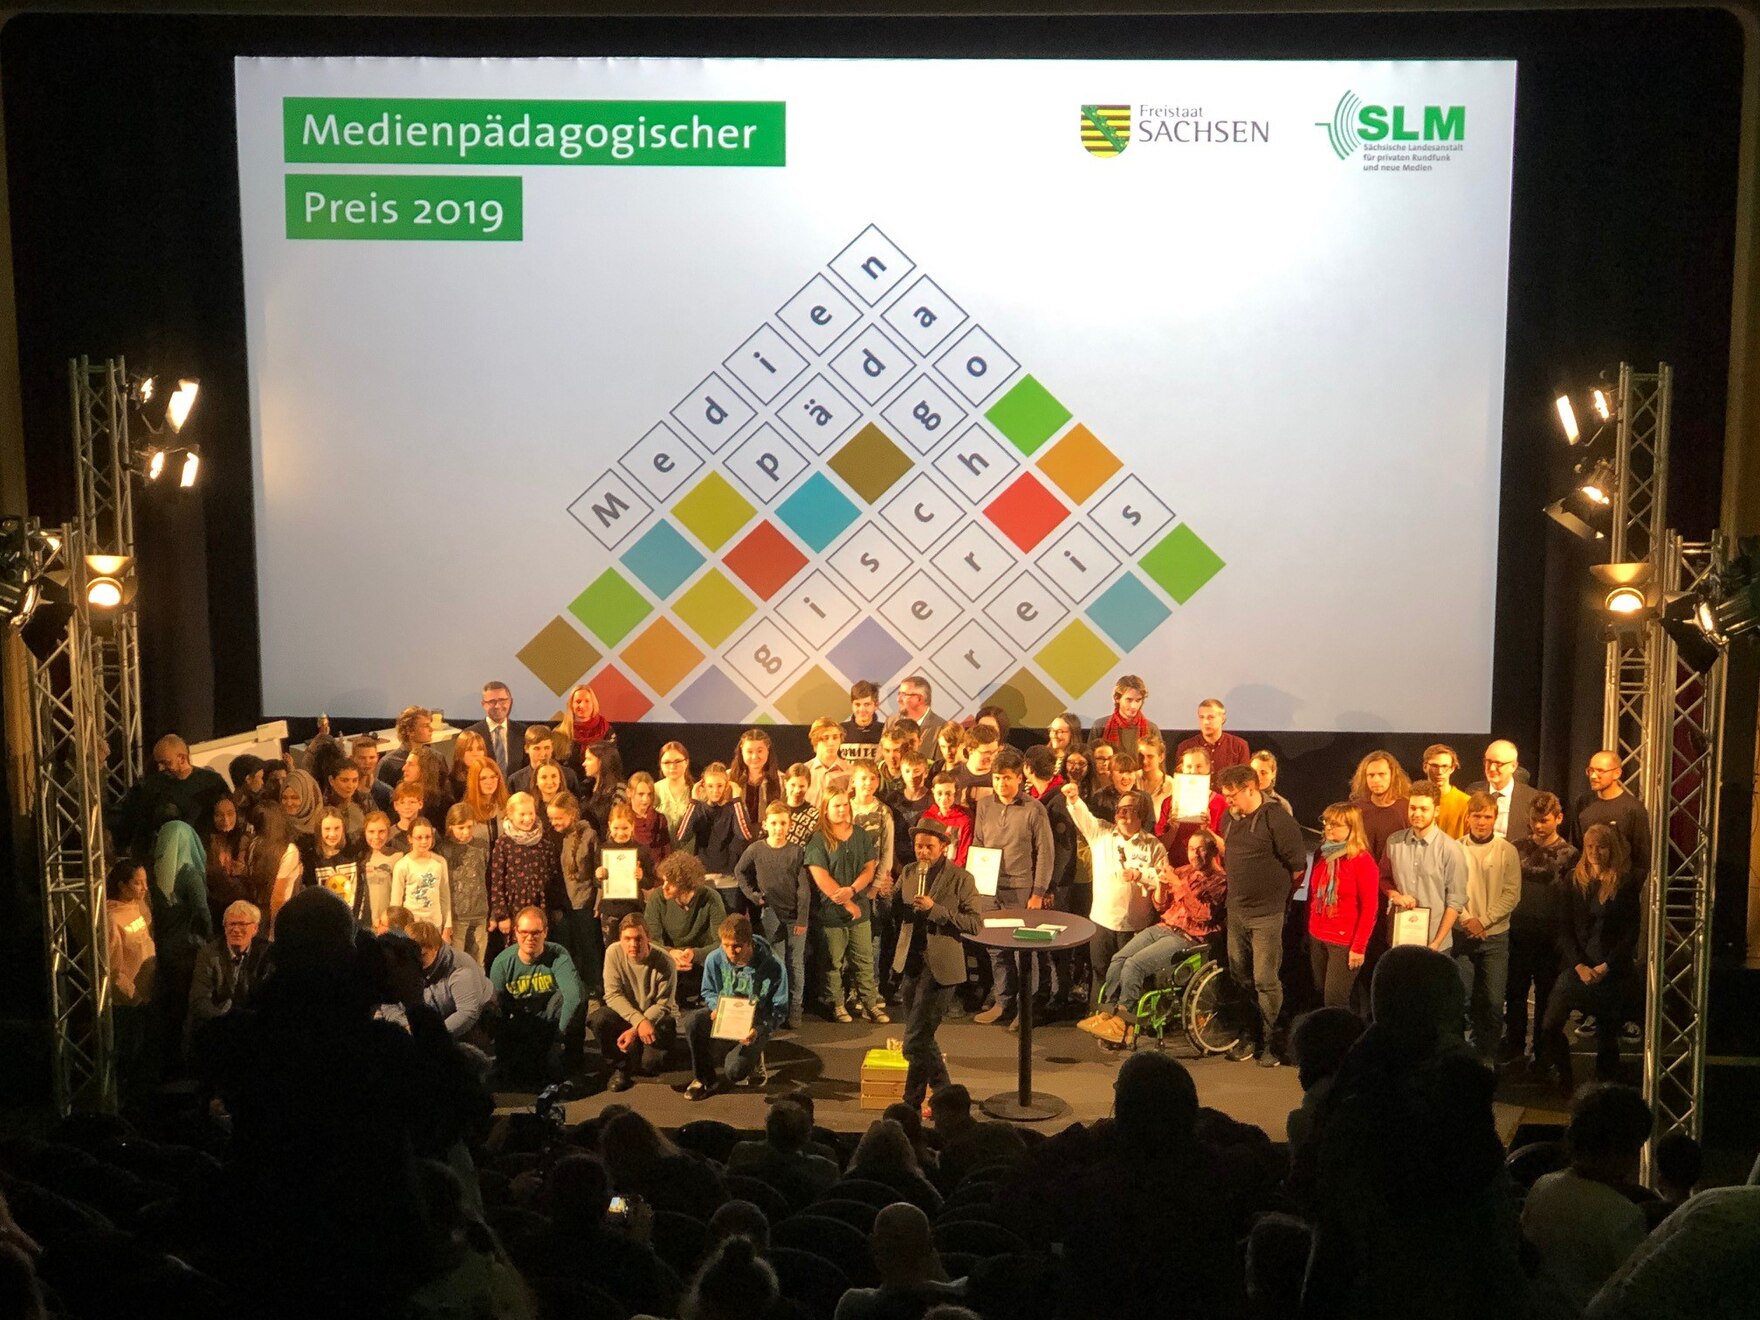 Preisträgerinnen und Preisträger vom Medienpädagogischer Preis 2019